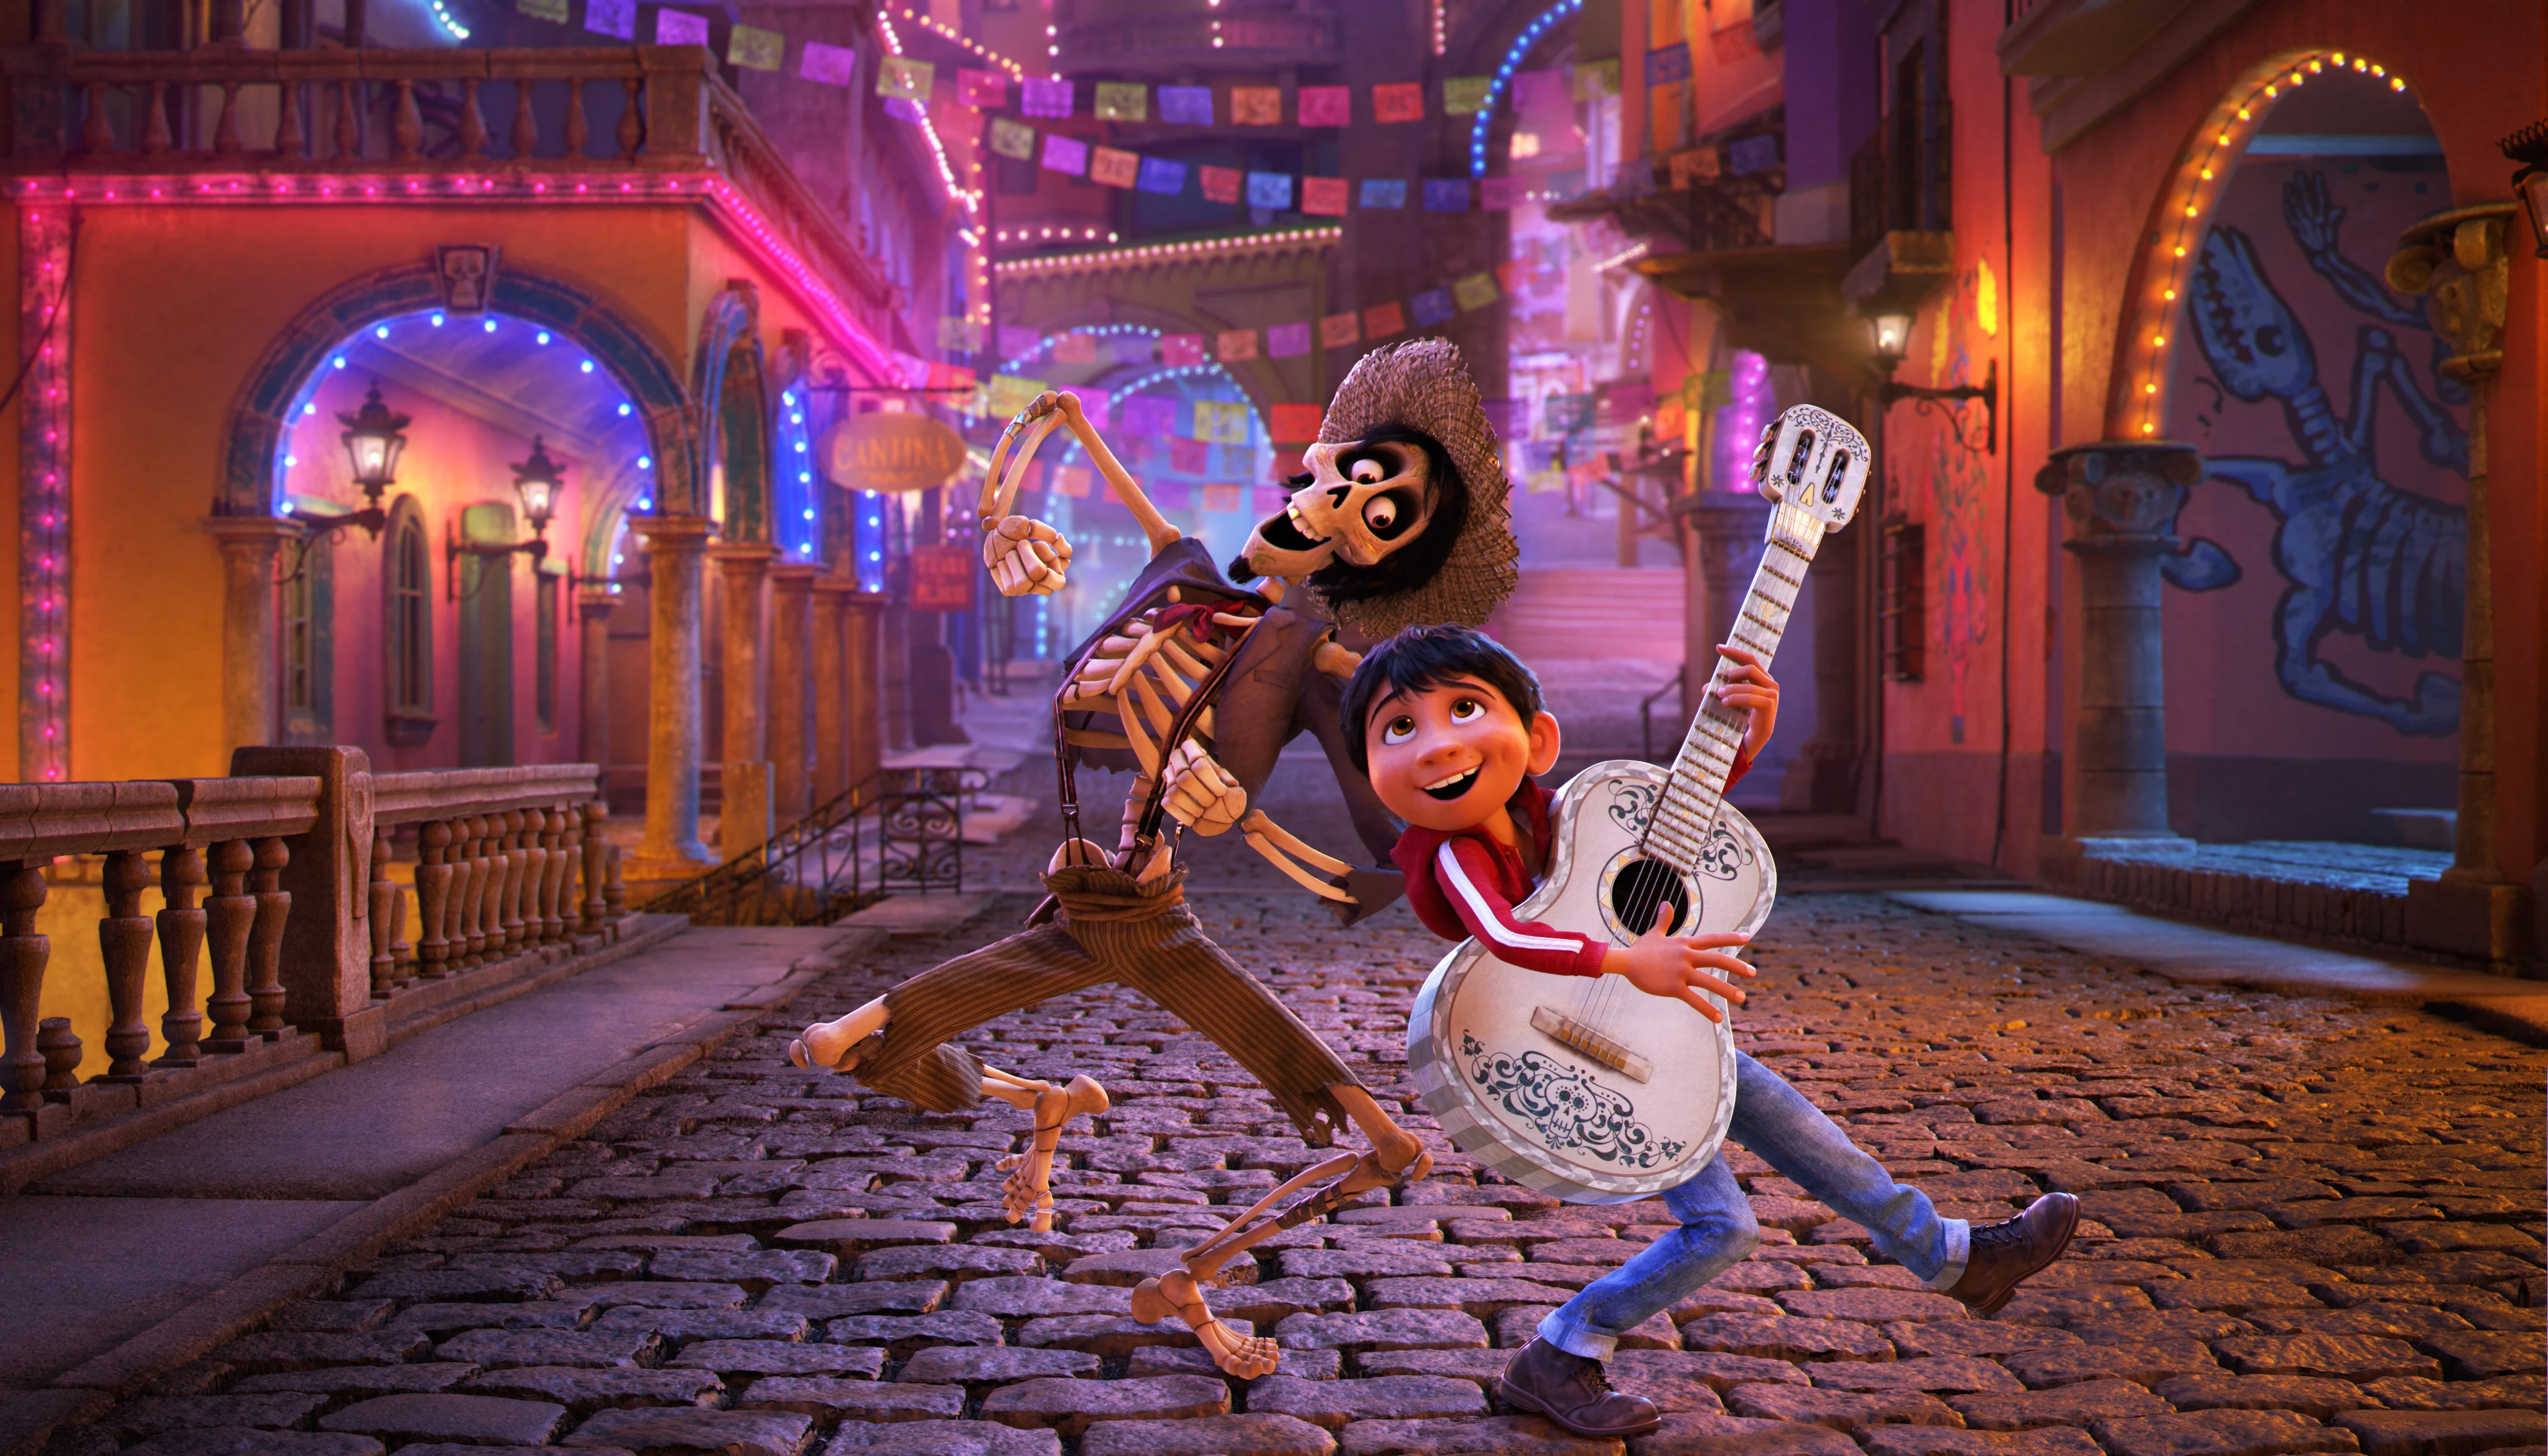 23 ноября на наши экраны вышла «Тайна Коко» (в оригинале — просто «Коко»), долгожданный оригинальный мультфильм студии Pixar, посвященный мексиканскому мальчику Мигелю, попадающему в мир мертвых и встречающему своих умерших родственников.